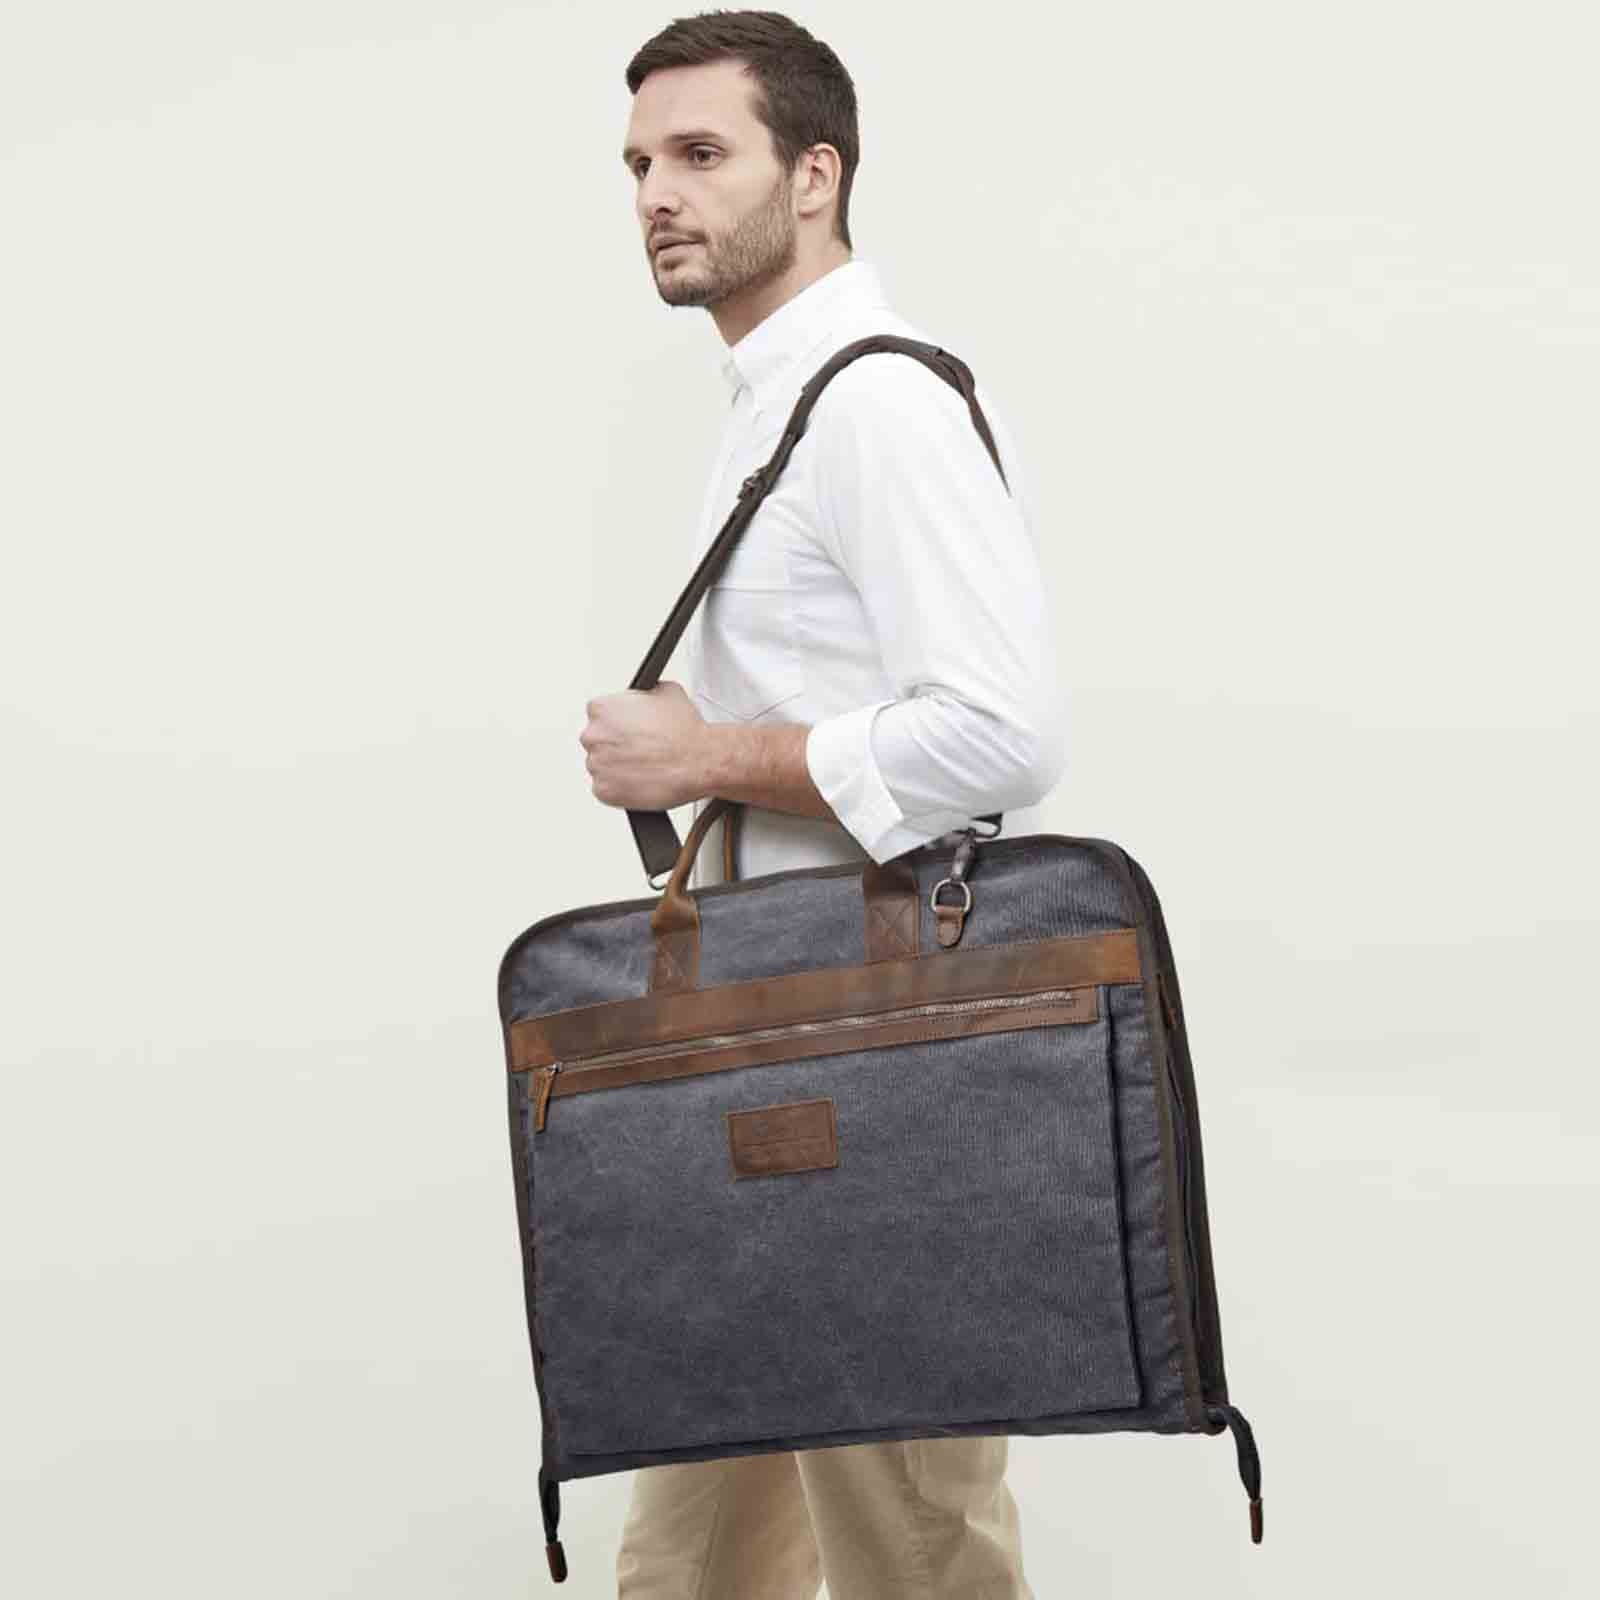 Men's Garment Bag for Travel